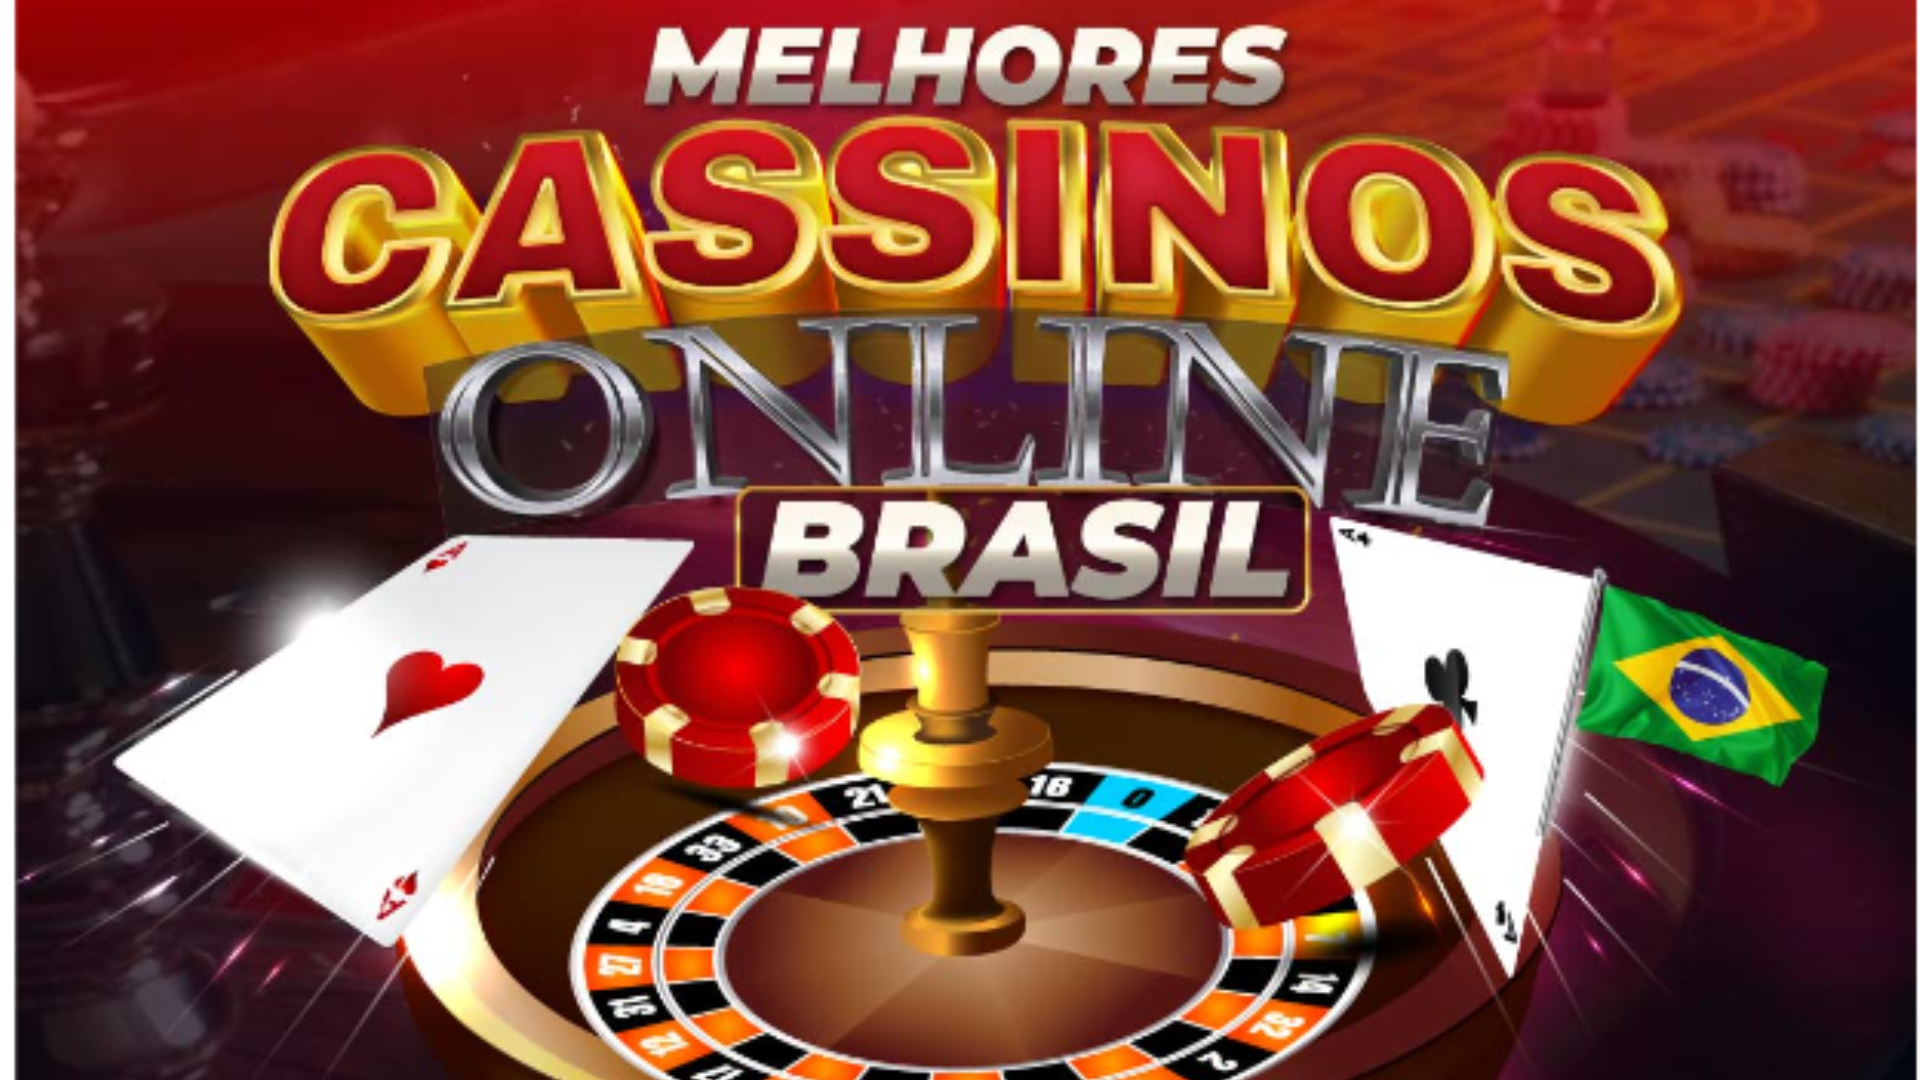 Melhores Cassinos Online do Brasil Jogue Nos Cassinos Online Mais  Recomendados